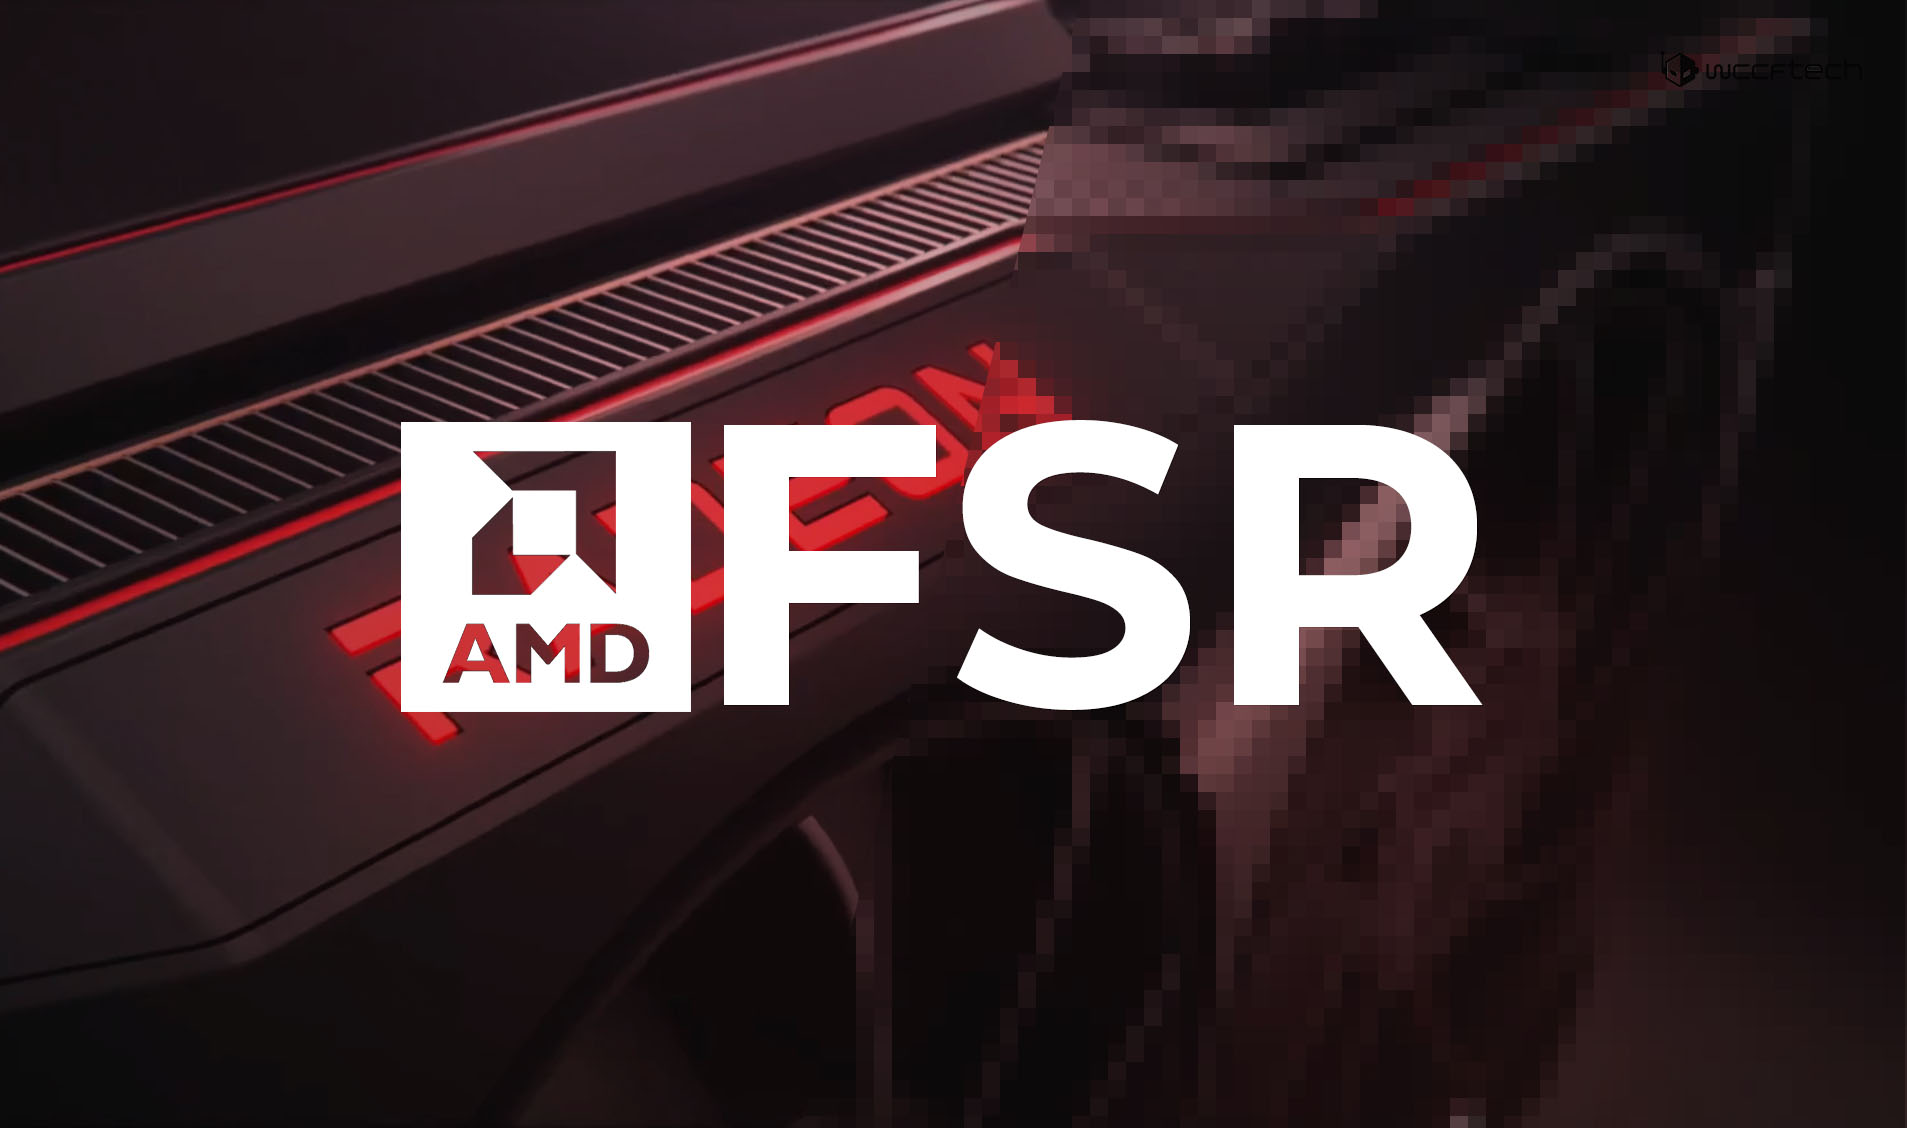 《死亡循环》成为首款支持AMD FSR 2.0的游戏 5月12日上线